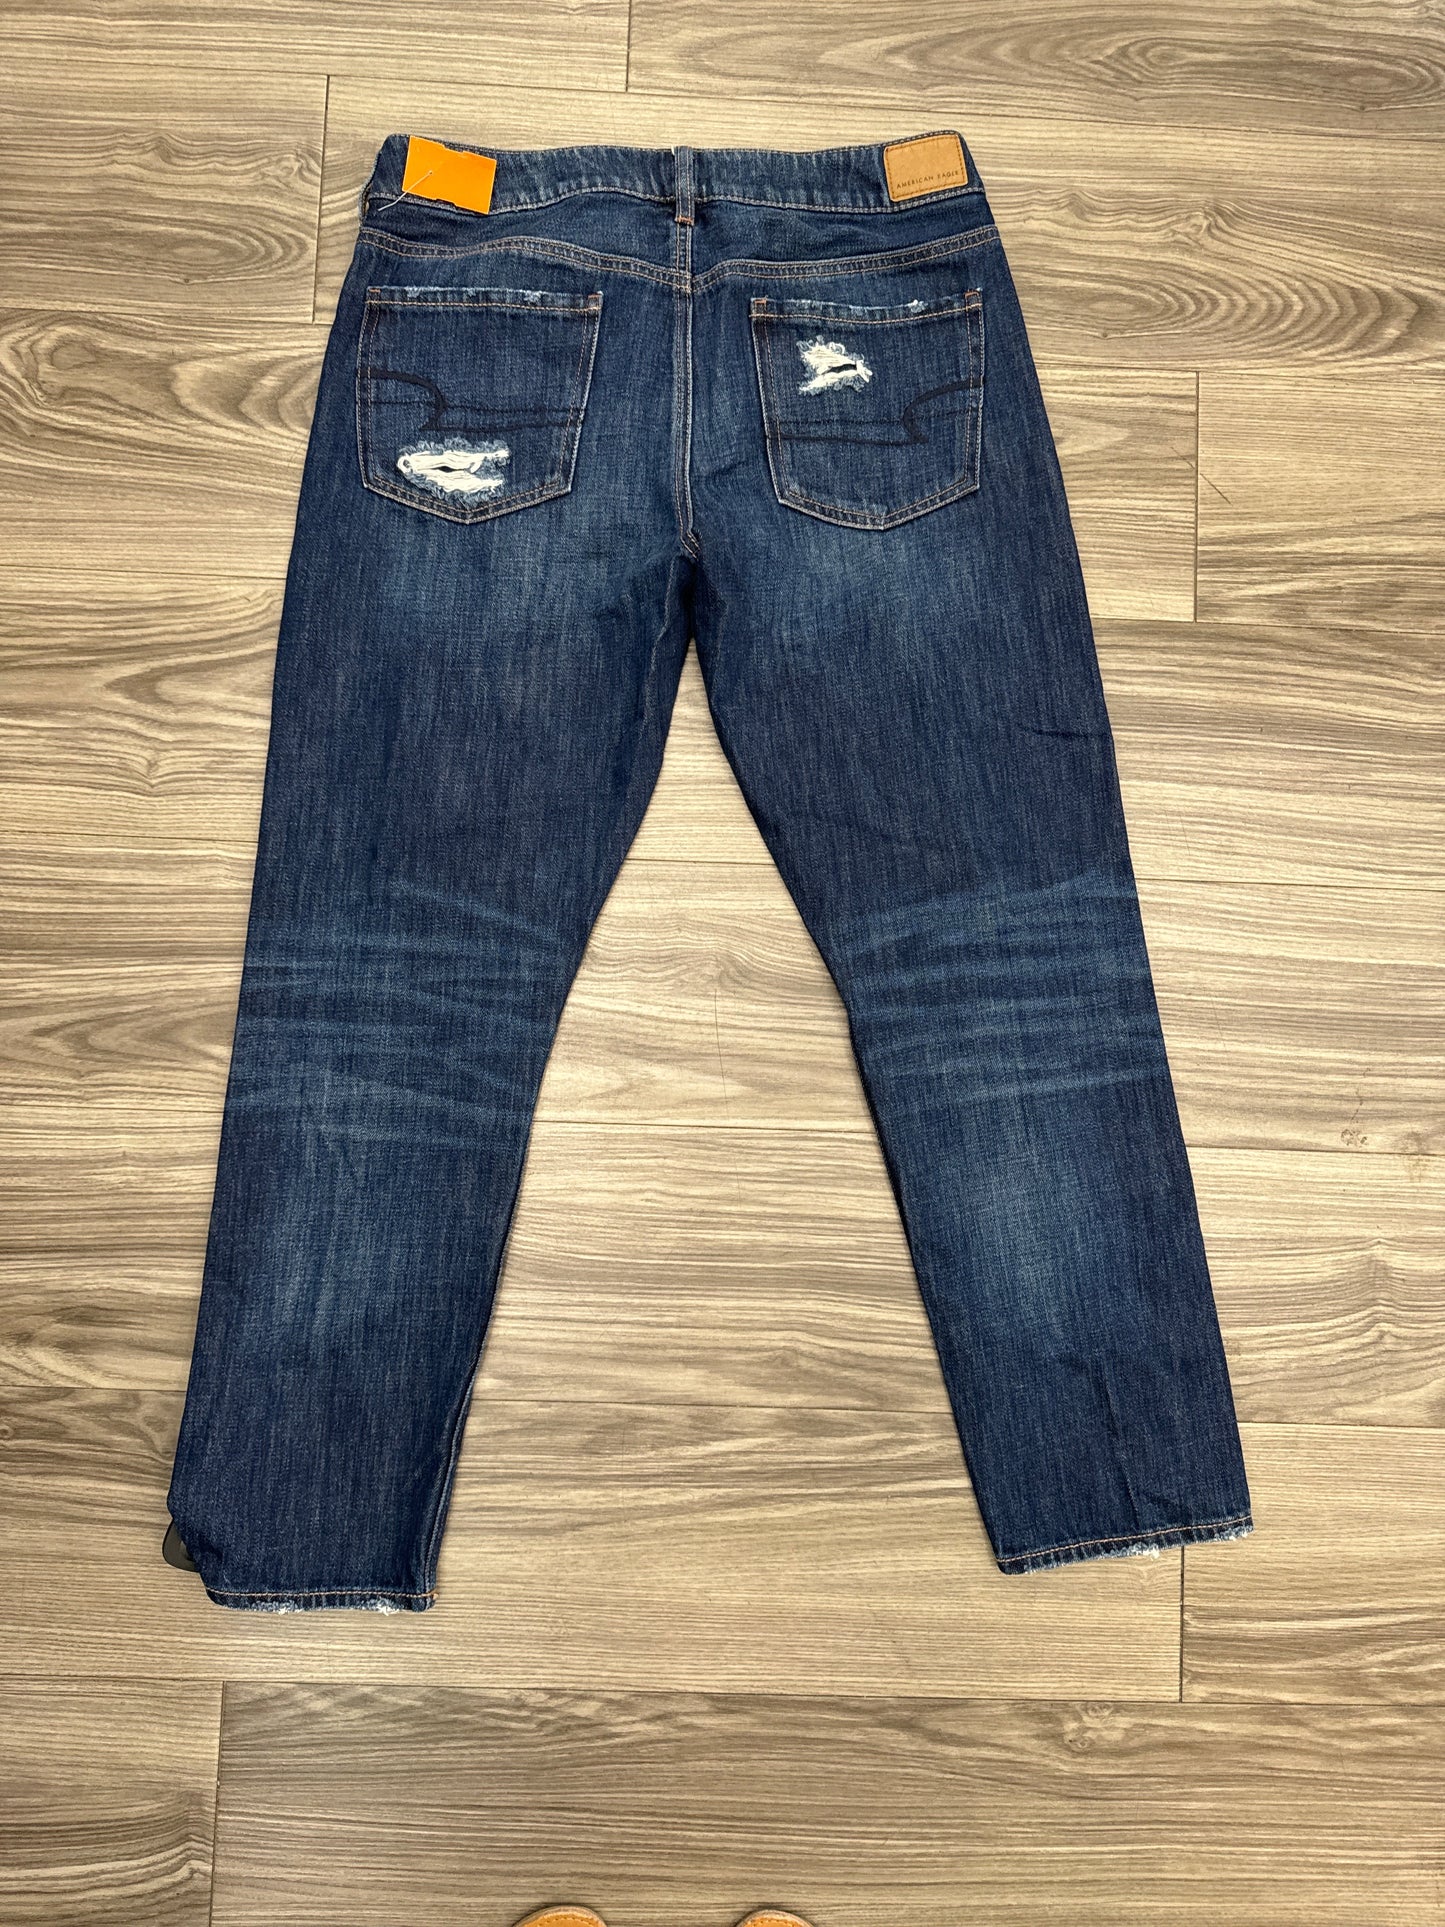 Jeans Boyfriend By American Eagle  Size: 8